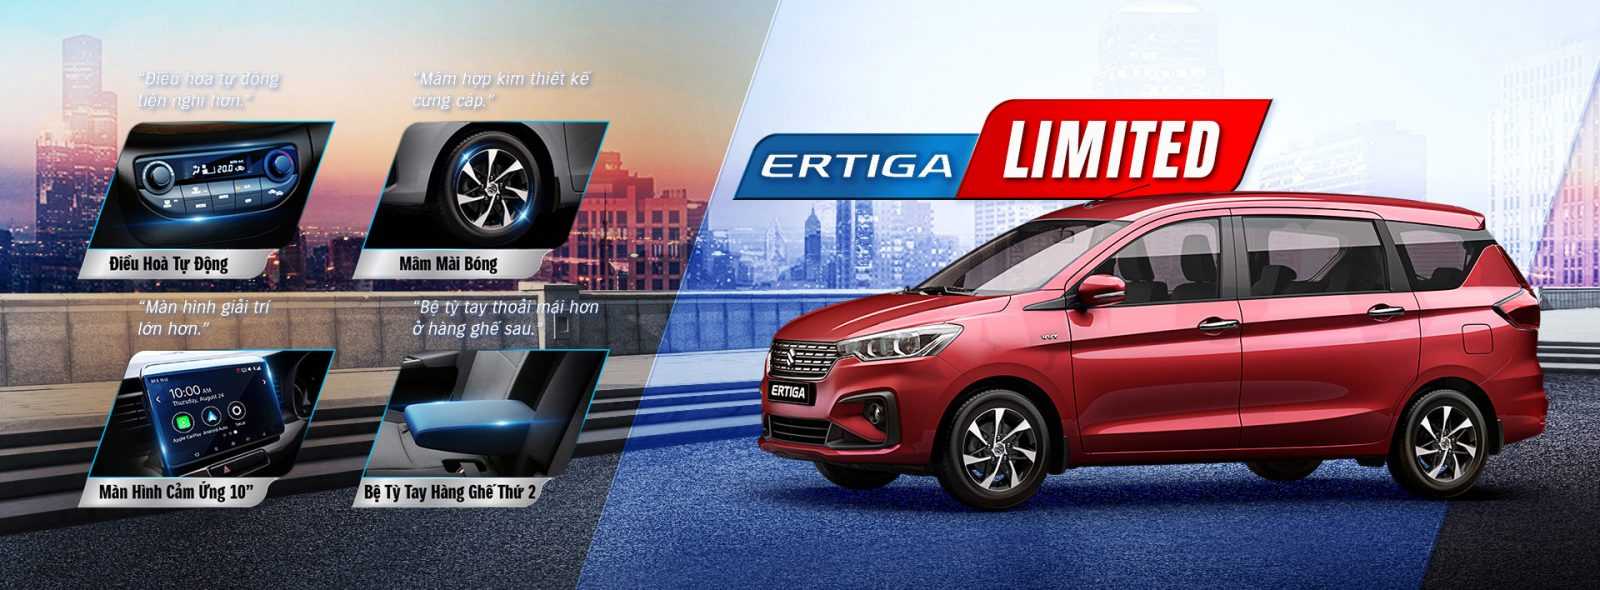 Chi tiết Suzuki Ertiga 2020 tại đại lý  nhiều thay đổi giá tăng nhẹ